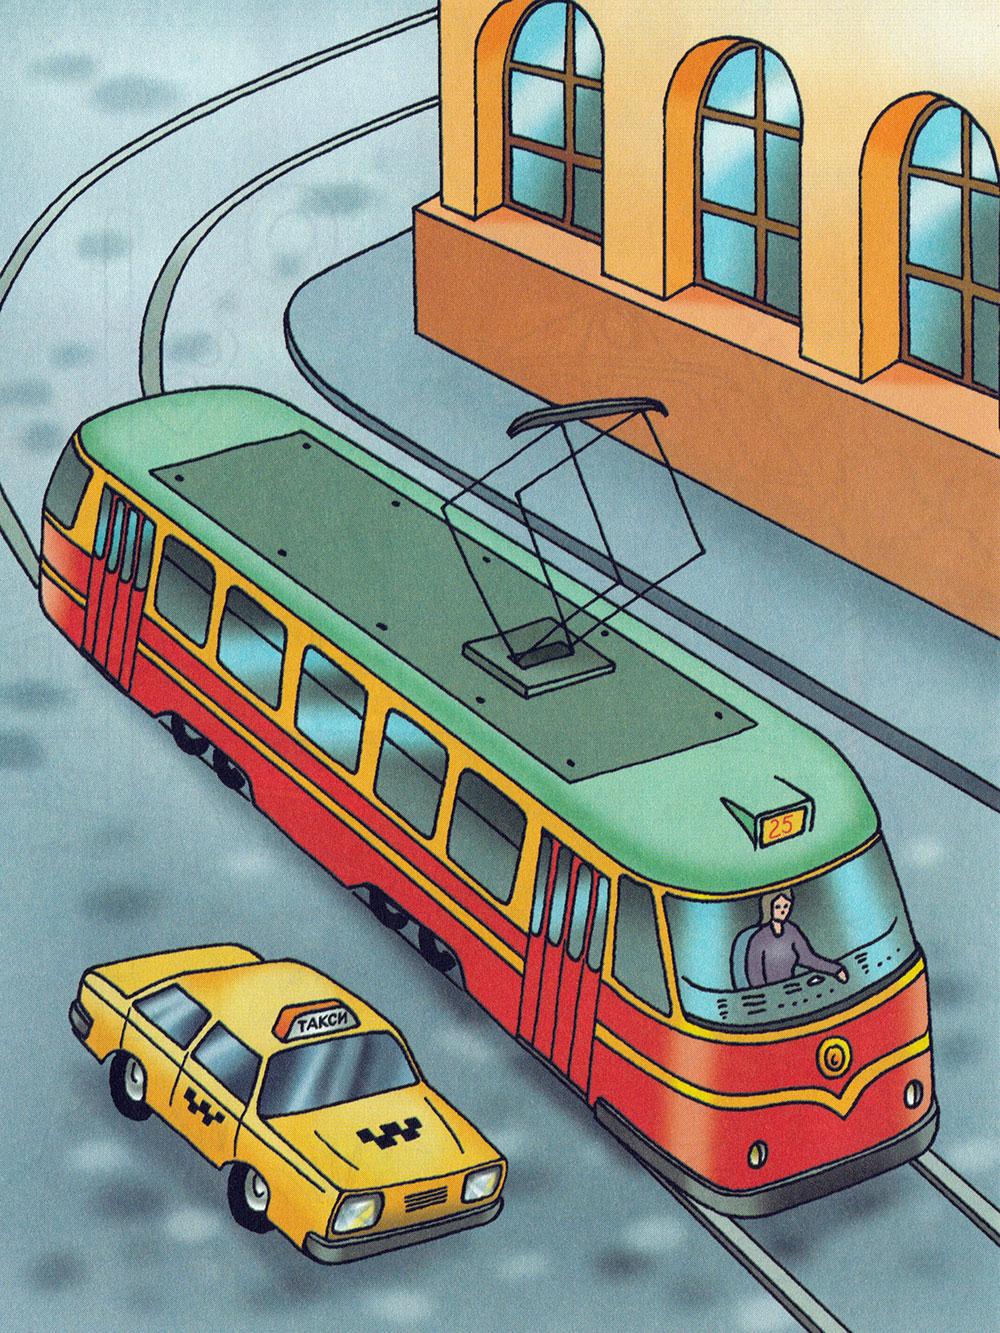 трамвай картинки для детей нарисованные